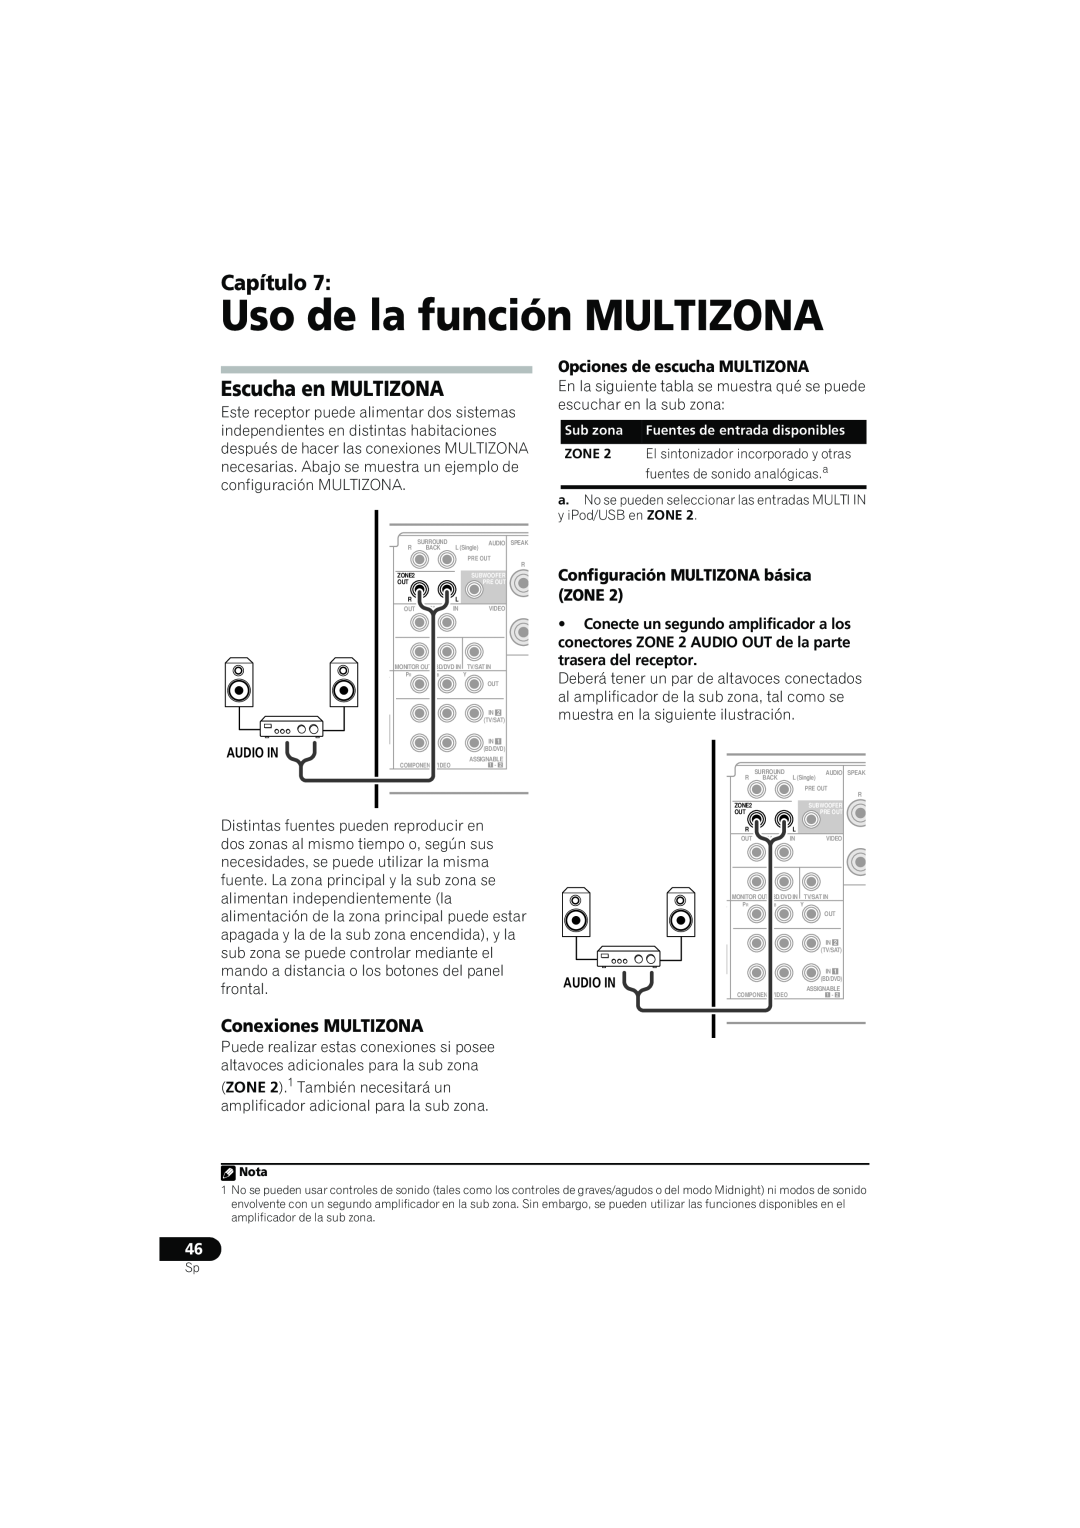 Pioneer VSX-819H-S Uso de la función MULTIZONA, Escucha en MULTIZONA, Conexiones MULTIZONA, Opciones de escucha MULTIZONA 